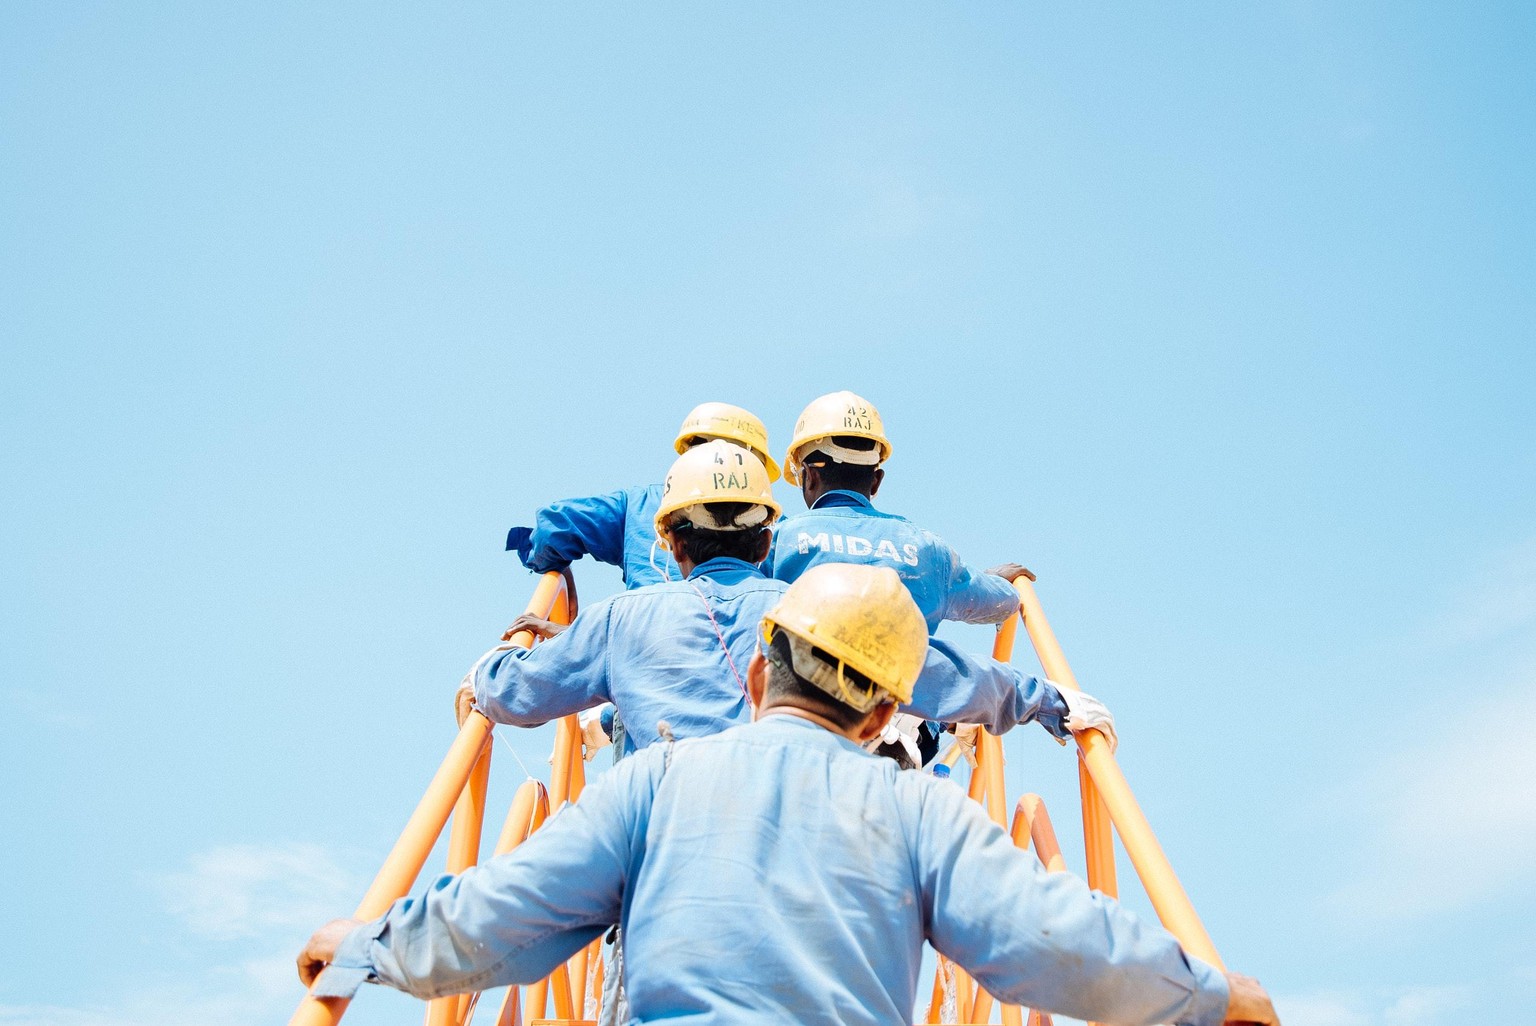 Arbeiter mit Helmen auf einer Treppe, Arbeitswelt (Symbolbild)